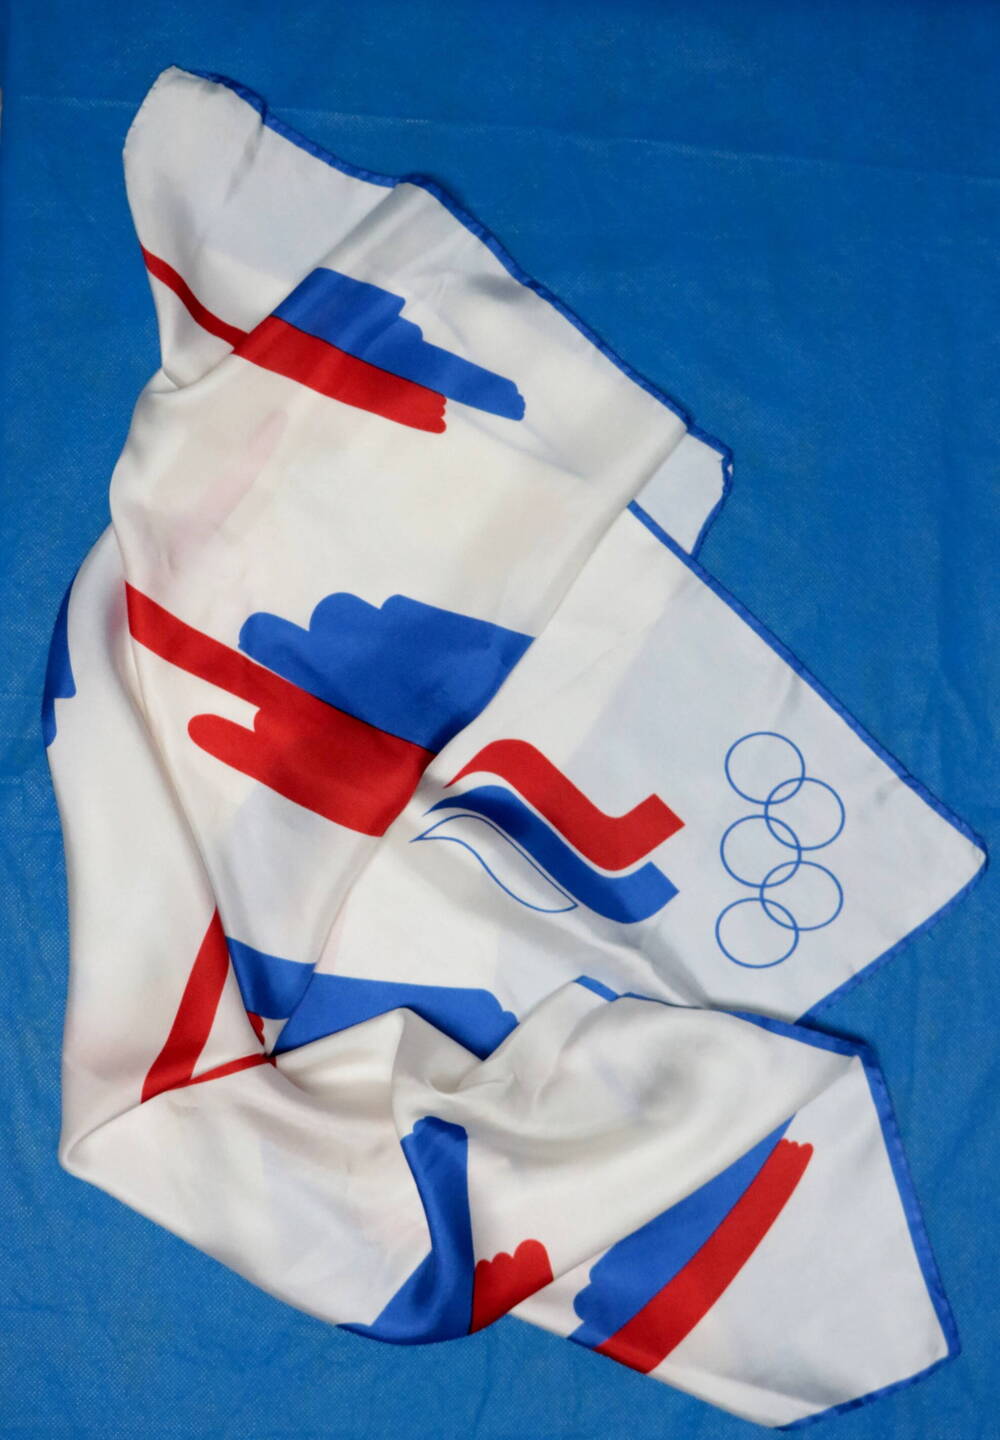 Костюм  участника  Олимпийских игр в Атланте для выхода  сборной России по спортивной гимнастике вне соревнований.